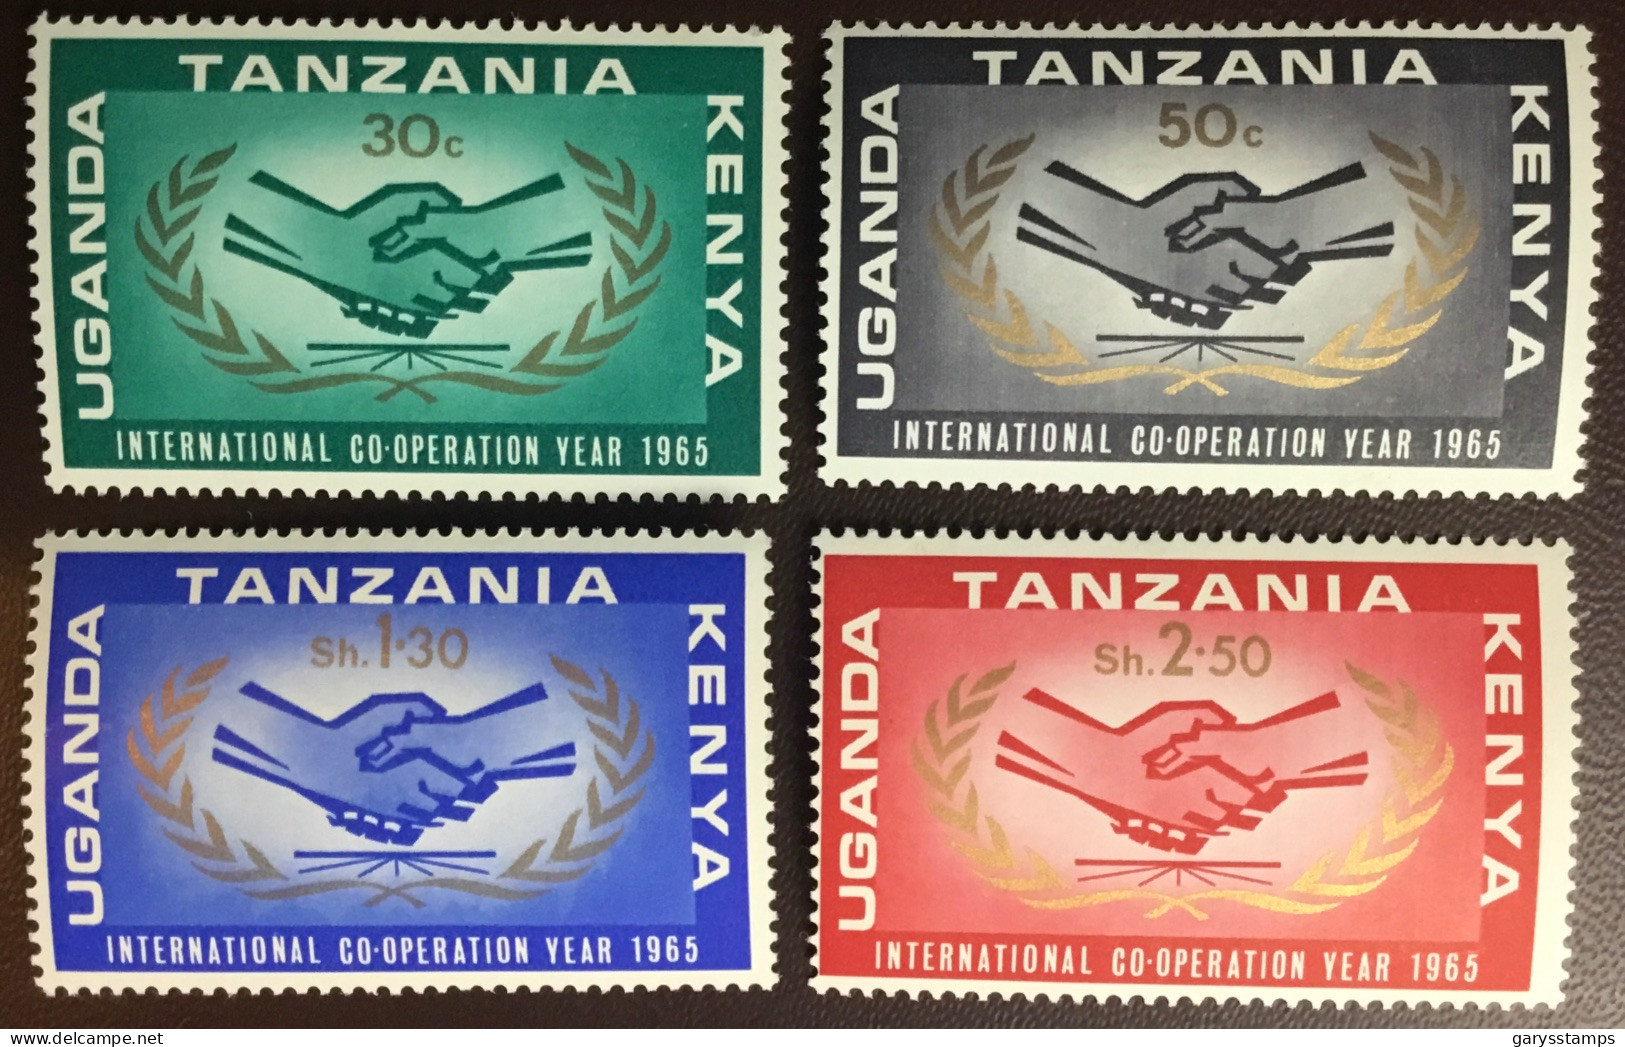 Kenya Uganda Tanzania 1965 ICY MNH - Kenya, Uganda & Tanzania